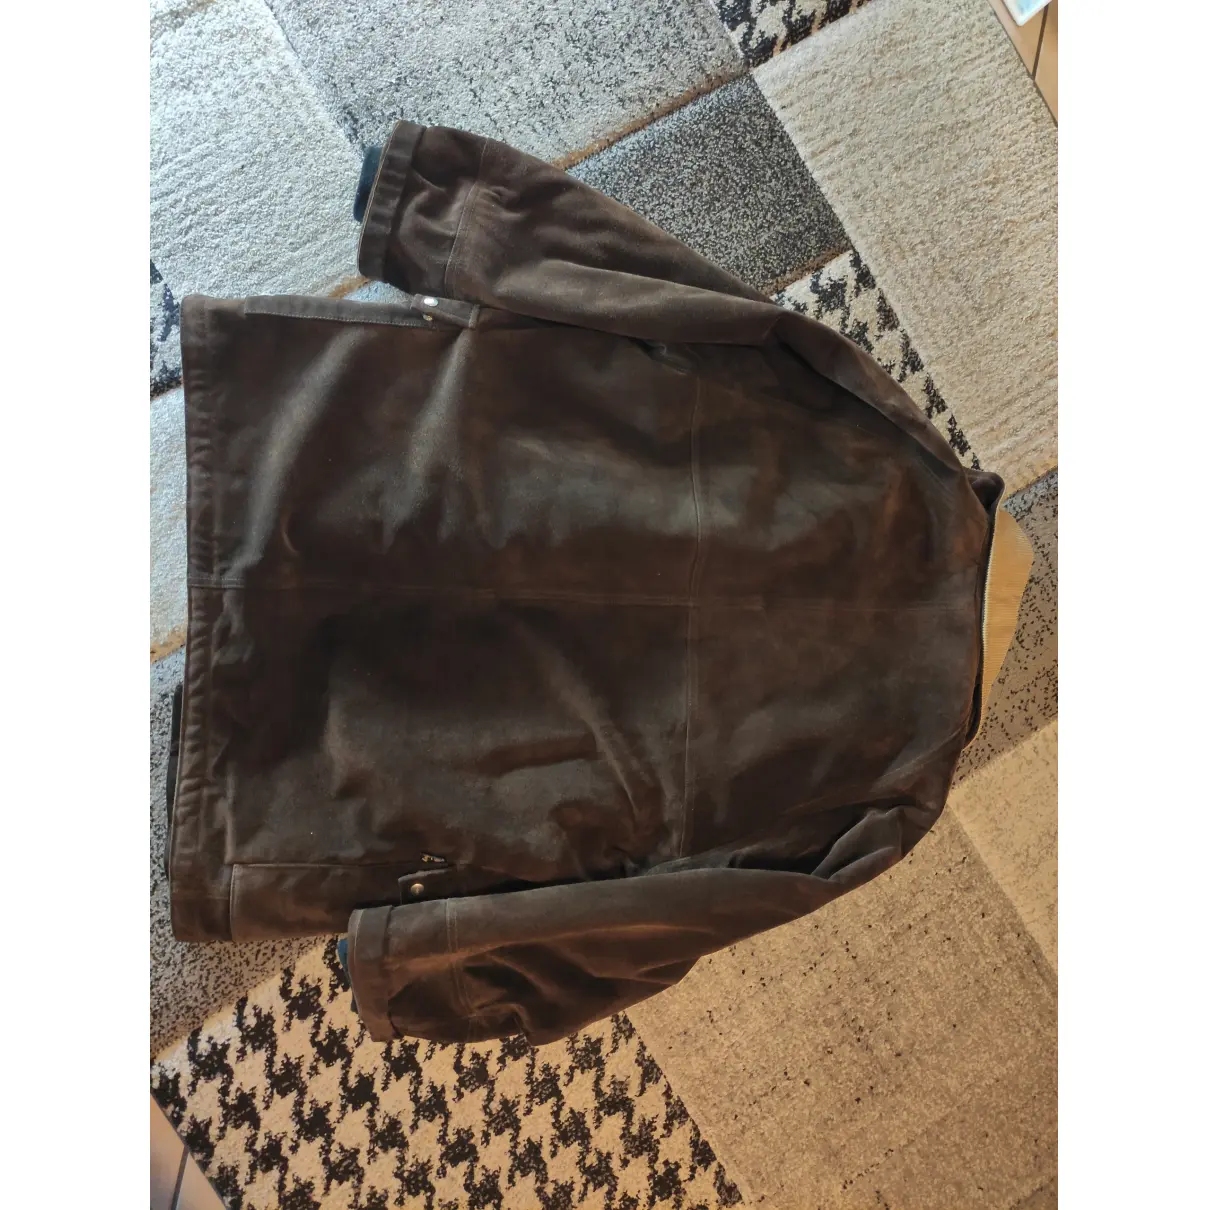 Leather coat Fay